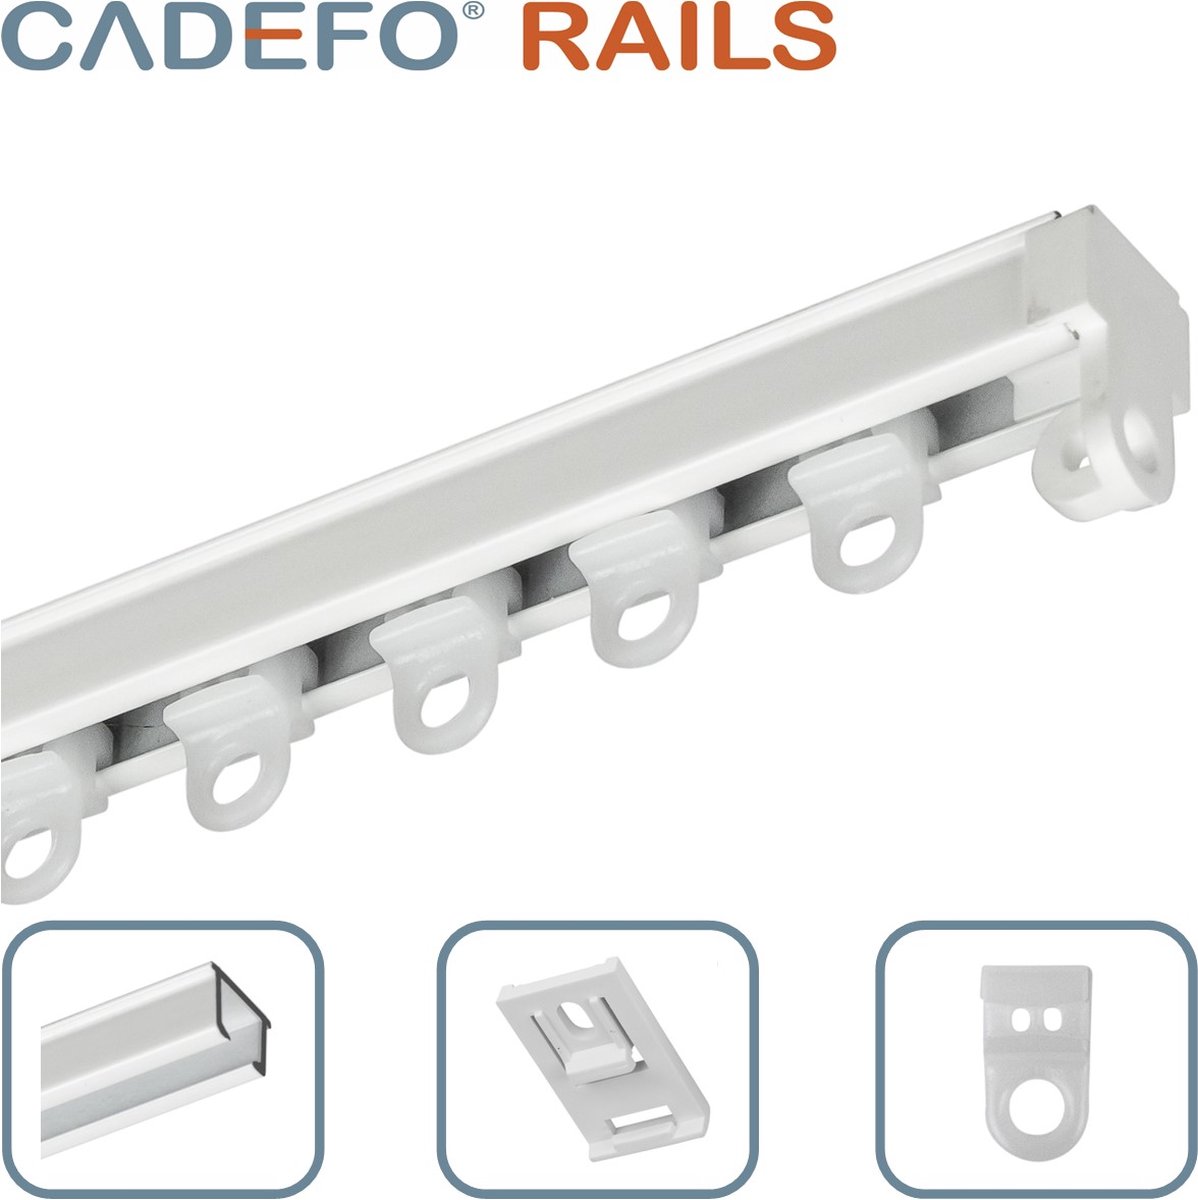 CADEFO RAILS (401 - 450 cm) Gordijnrails - Compleet op maat! - UIT 1 STUK - Leverbaar tot 6 meter - Plafondbevestiging - Lengte 430 cm